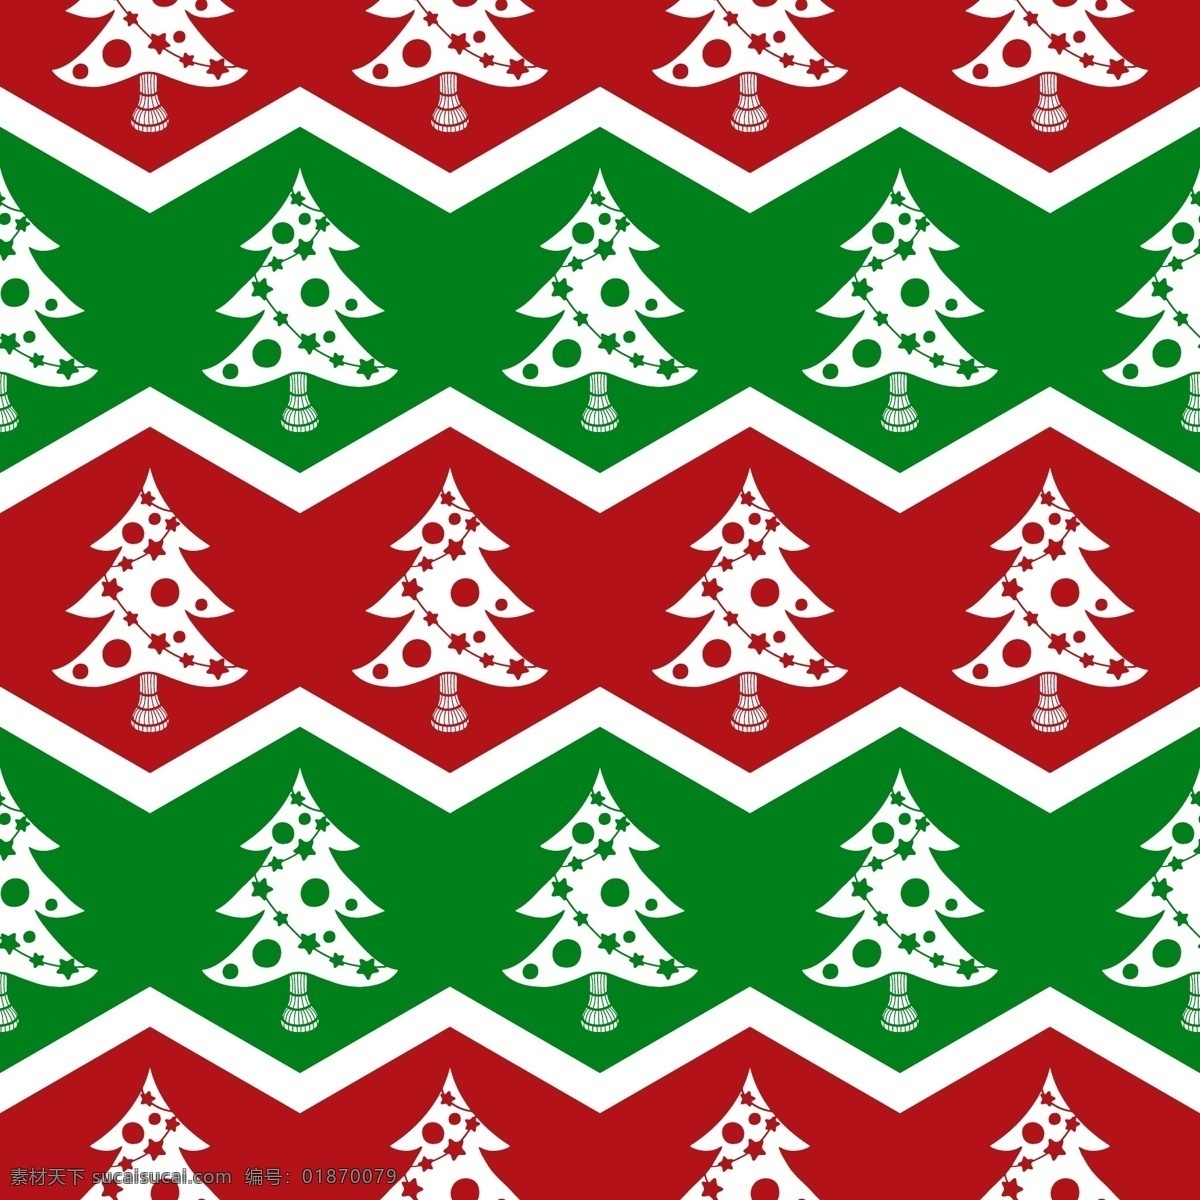 圣诞装饰图案 圣诞节 无缝背景 圣诞树 圣诞海报背景 2015 年 新年 羊年 文化艺术 节日庆祝 矢量